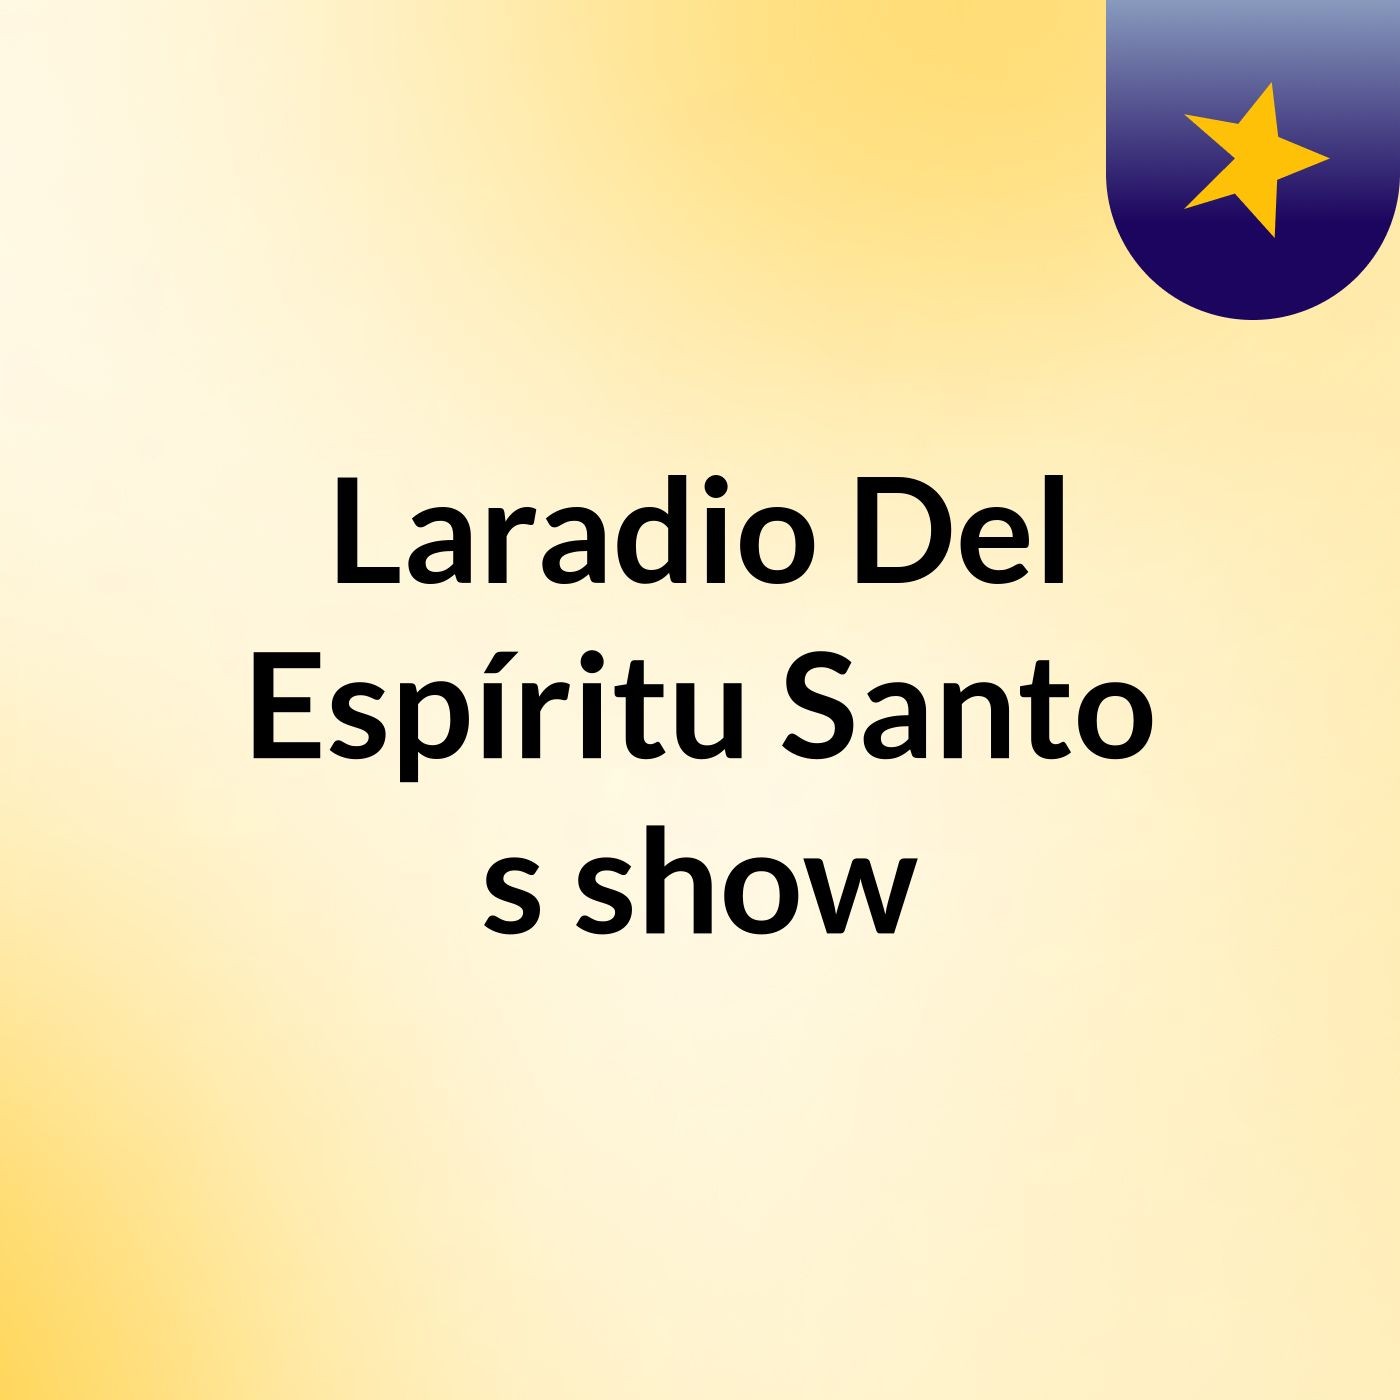 Laradio Del Espíritu Santo's show